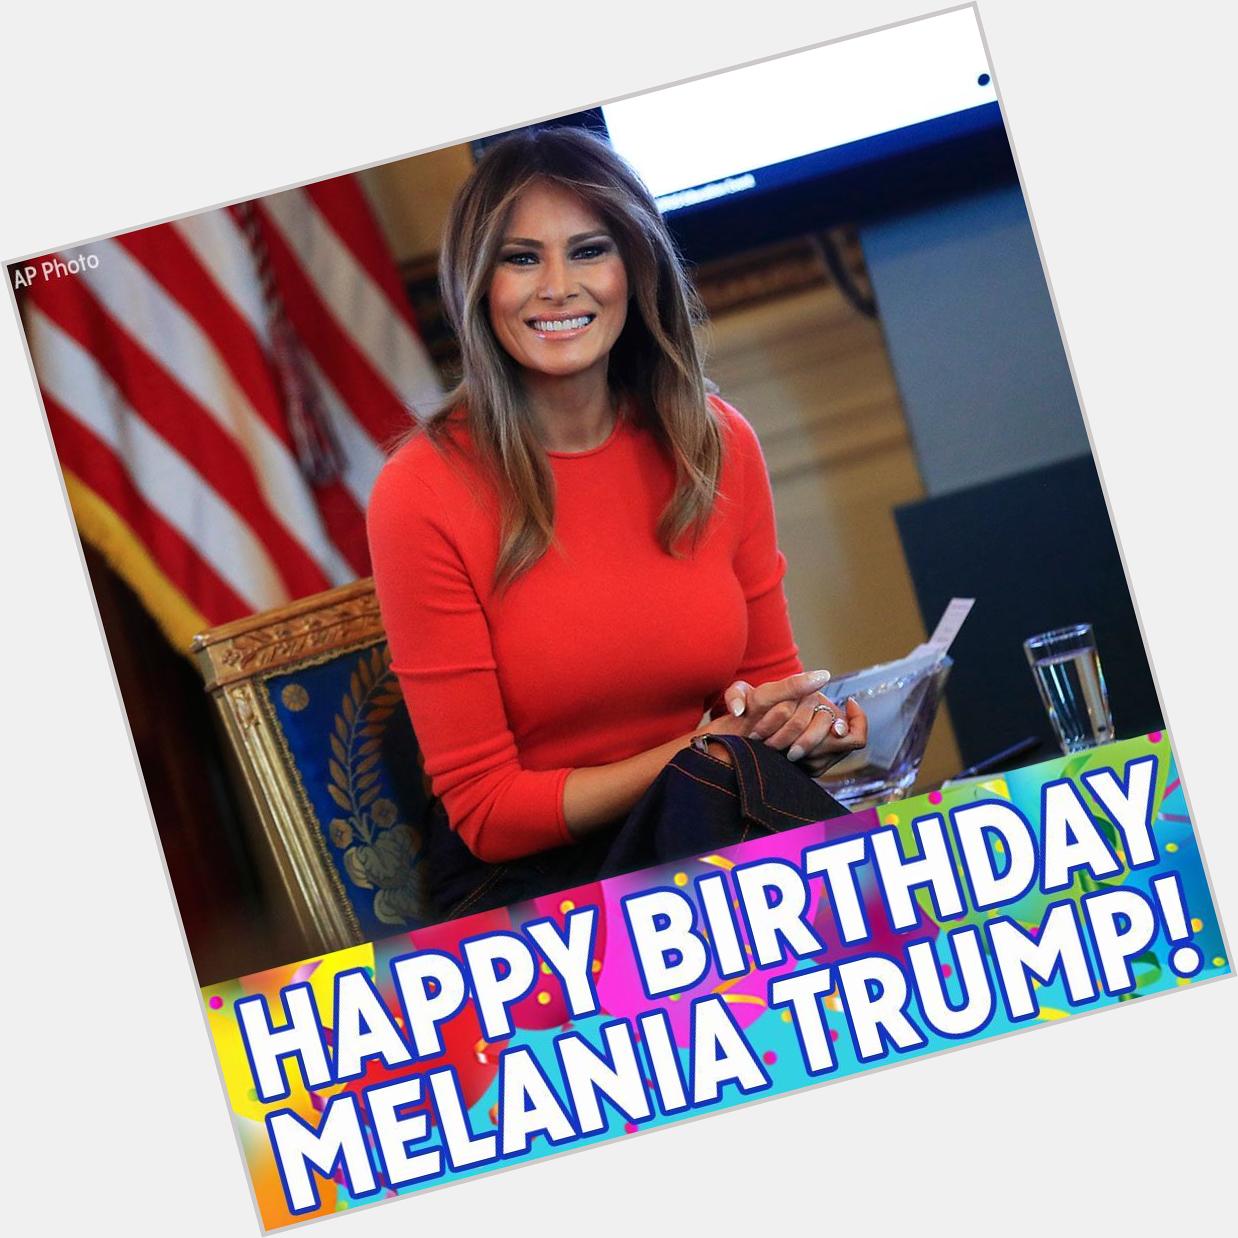 Happy birthday to Melania Trump! 